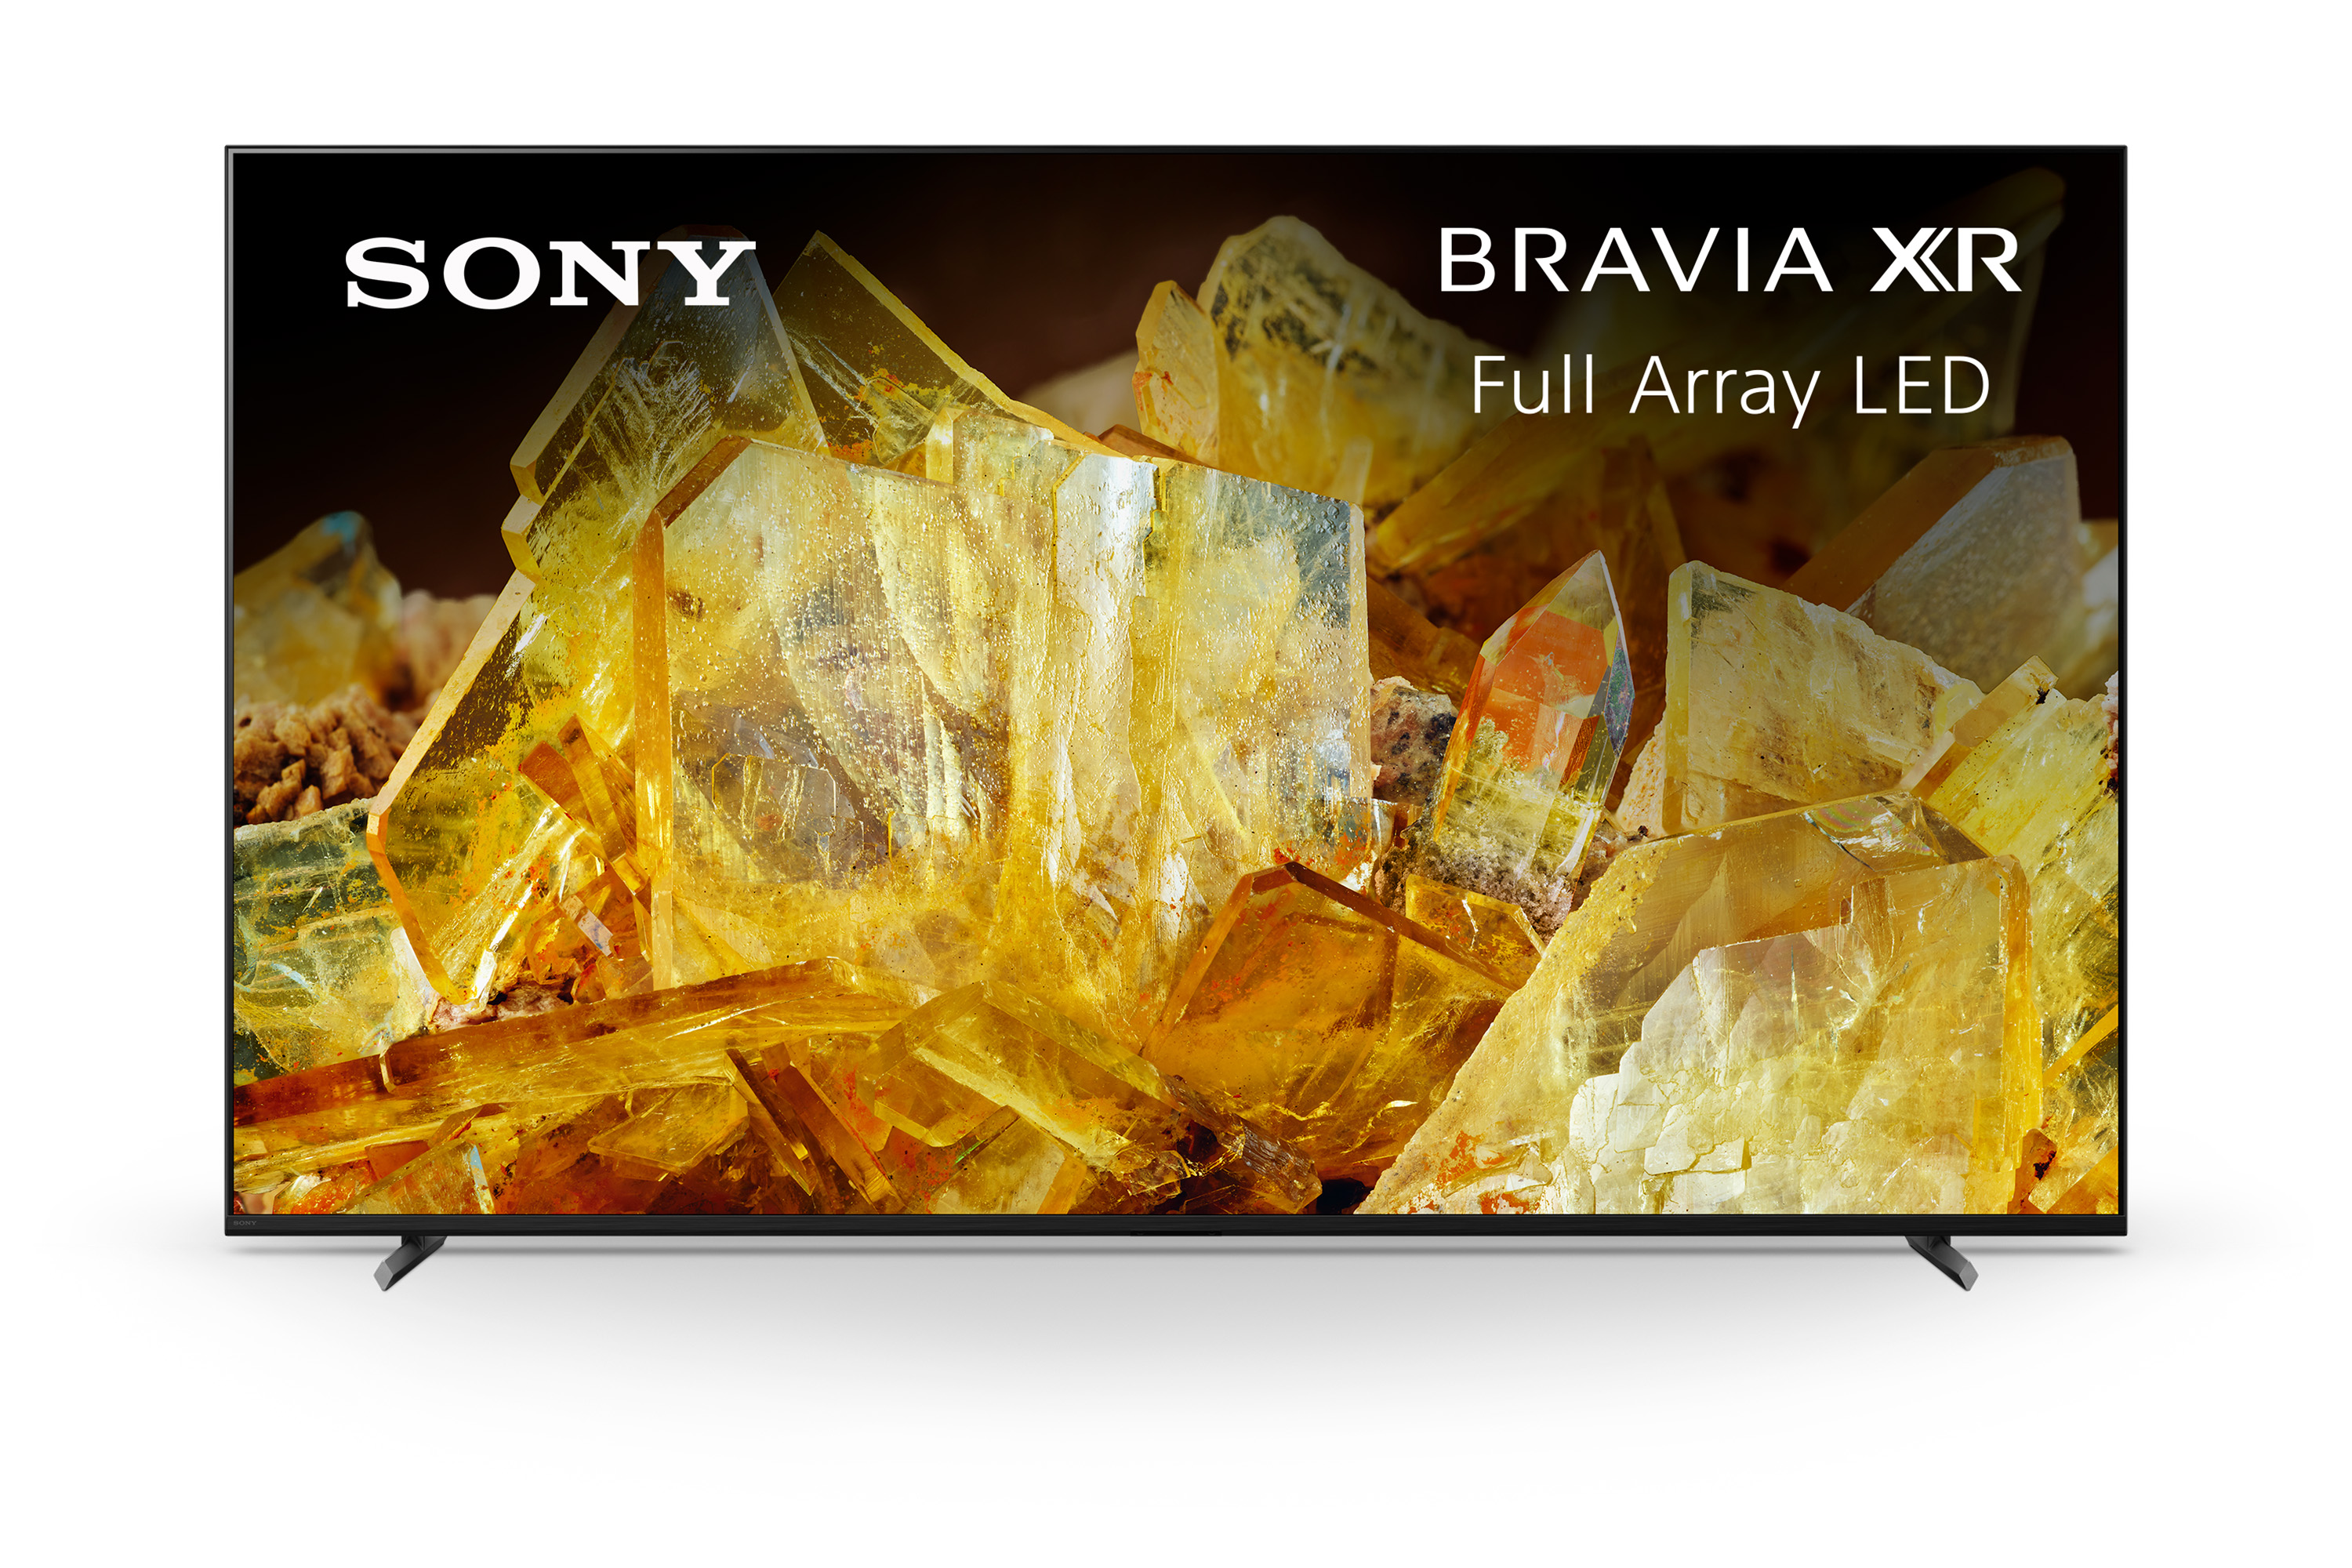 Sony BRAVIA XR X90L Full Array LED 4K HDR Google TV